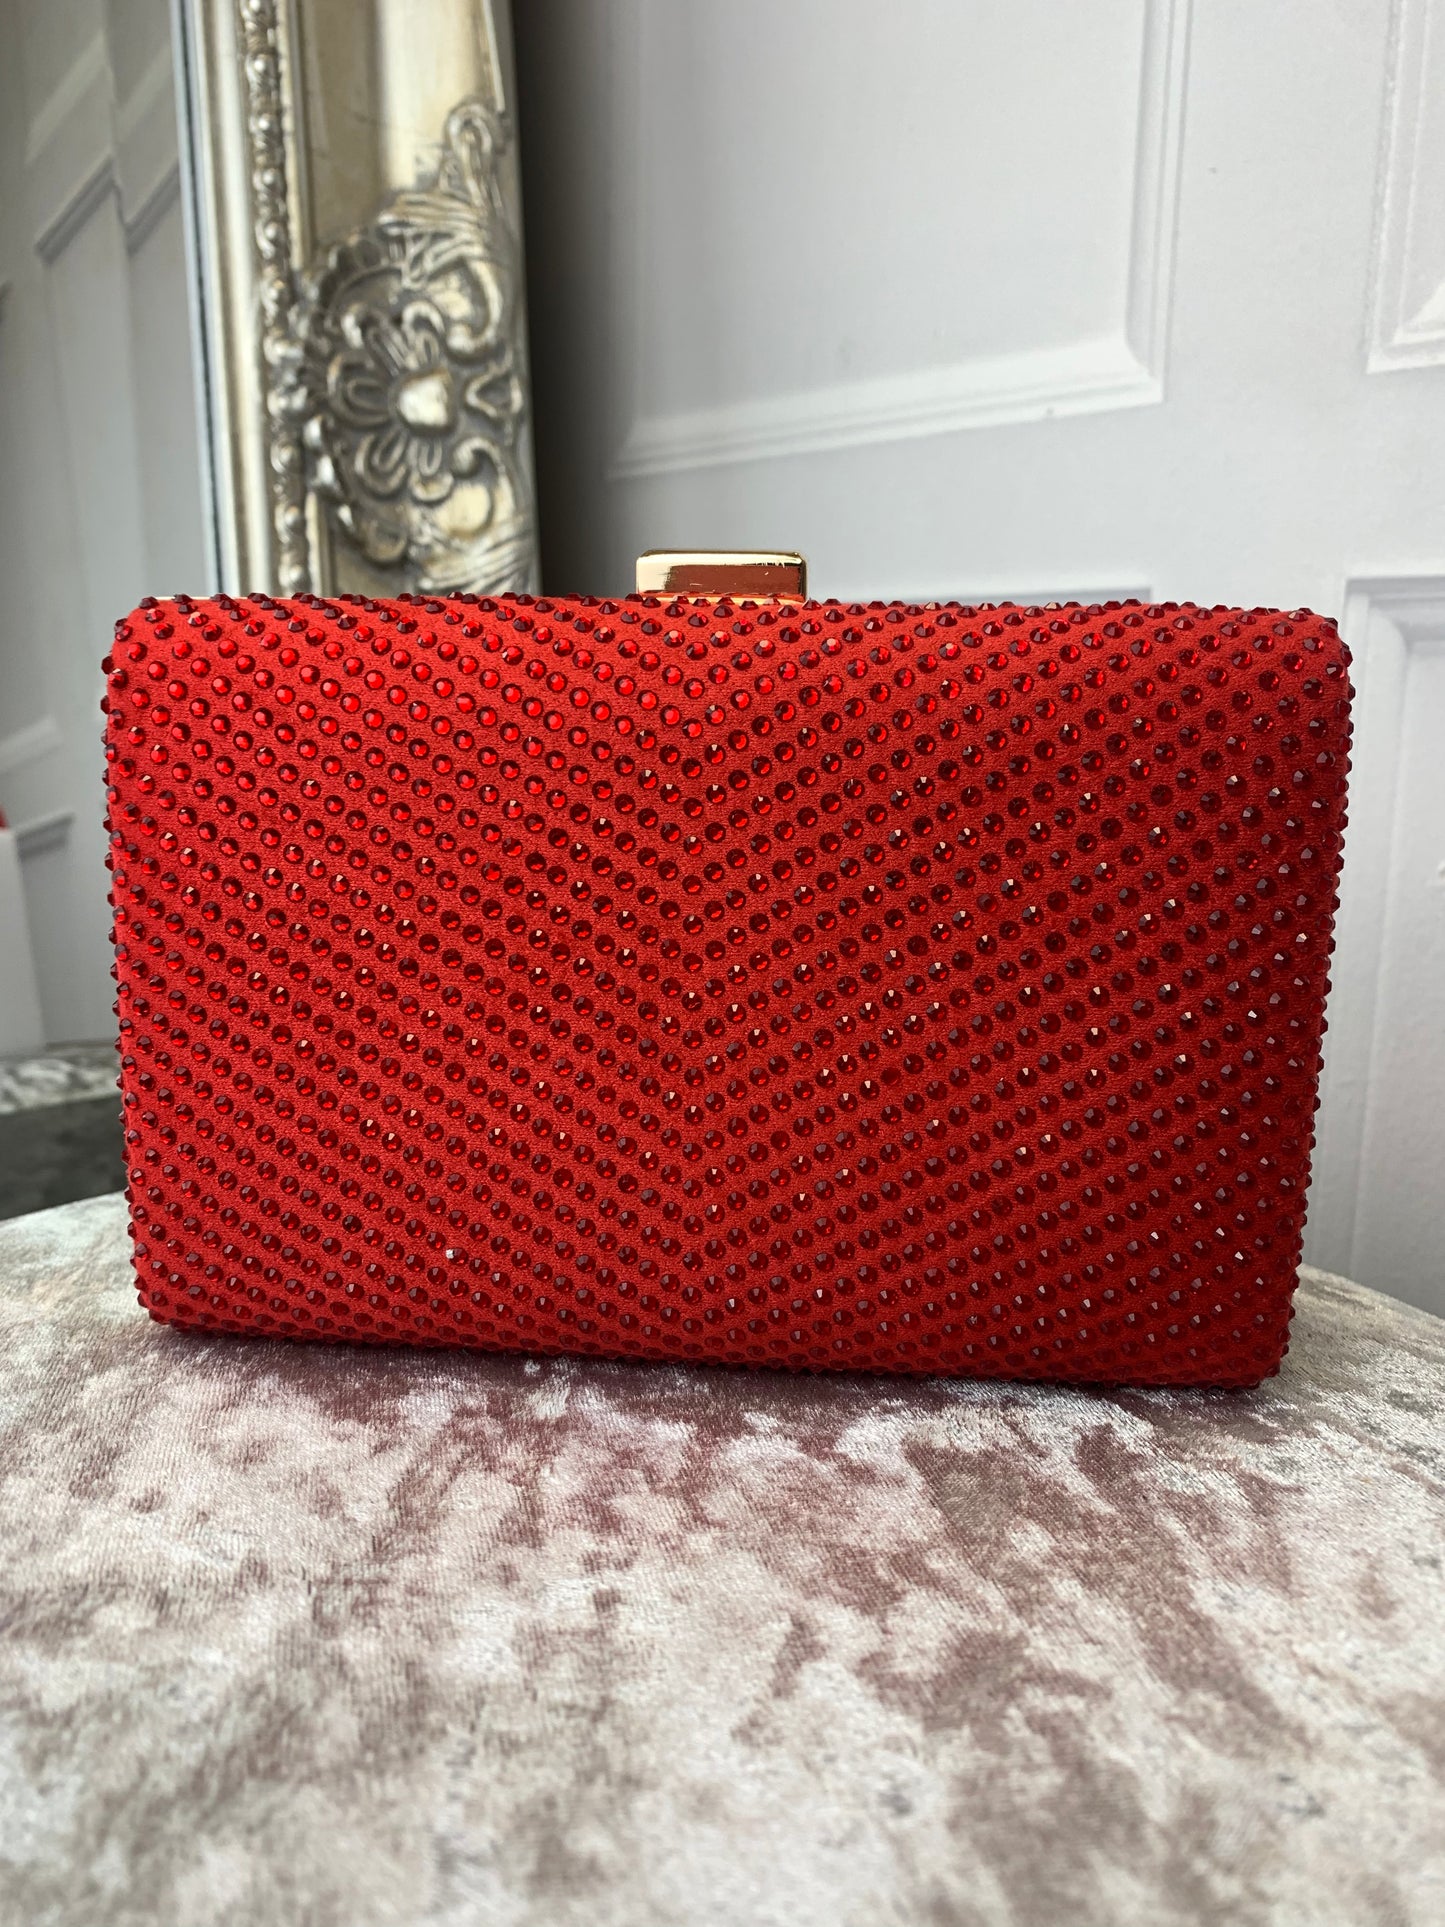 Red diamanté clutch bag